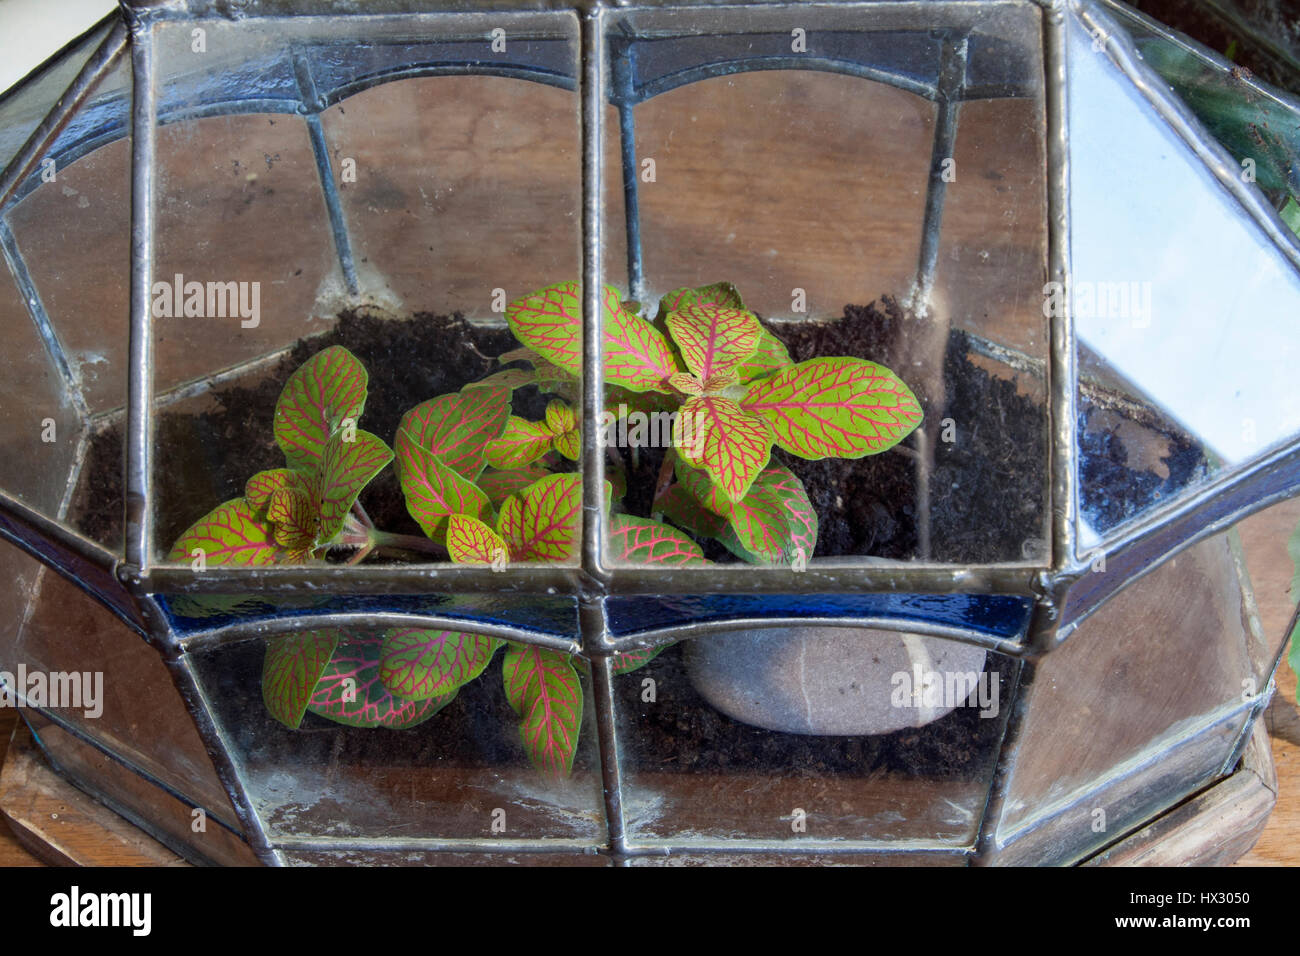 Terrarium planted up with Testrastigma voinerianum Stock Photo